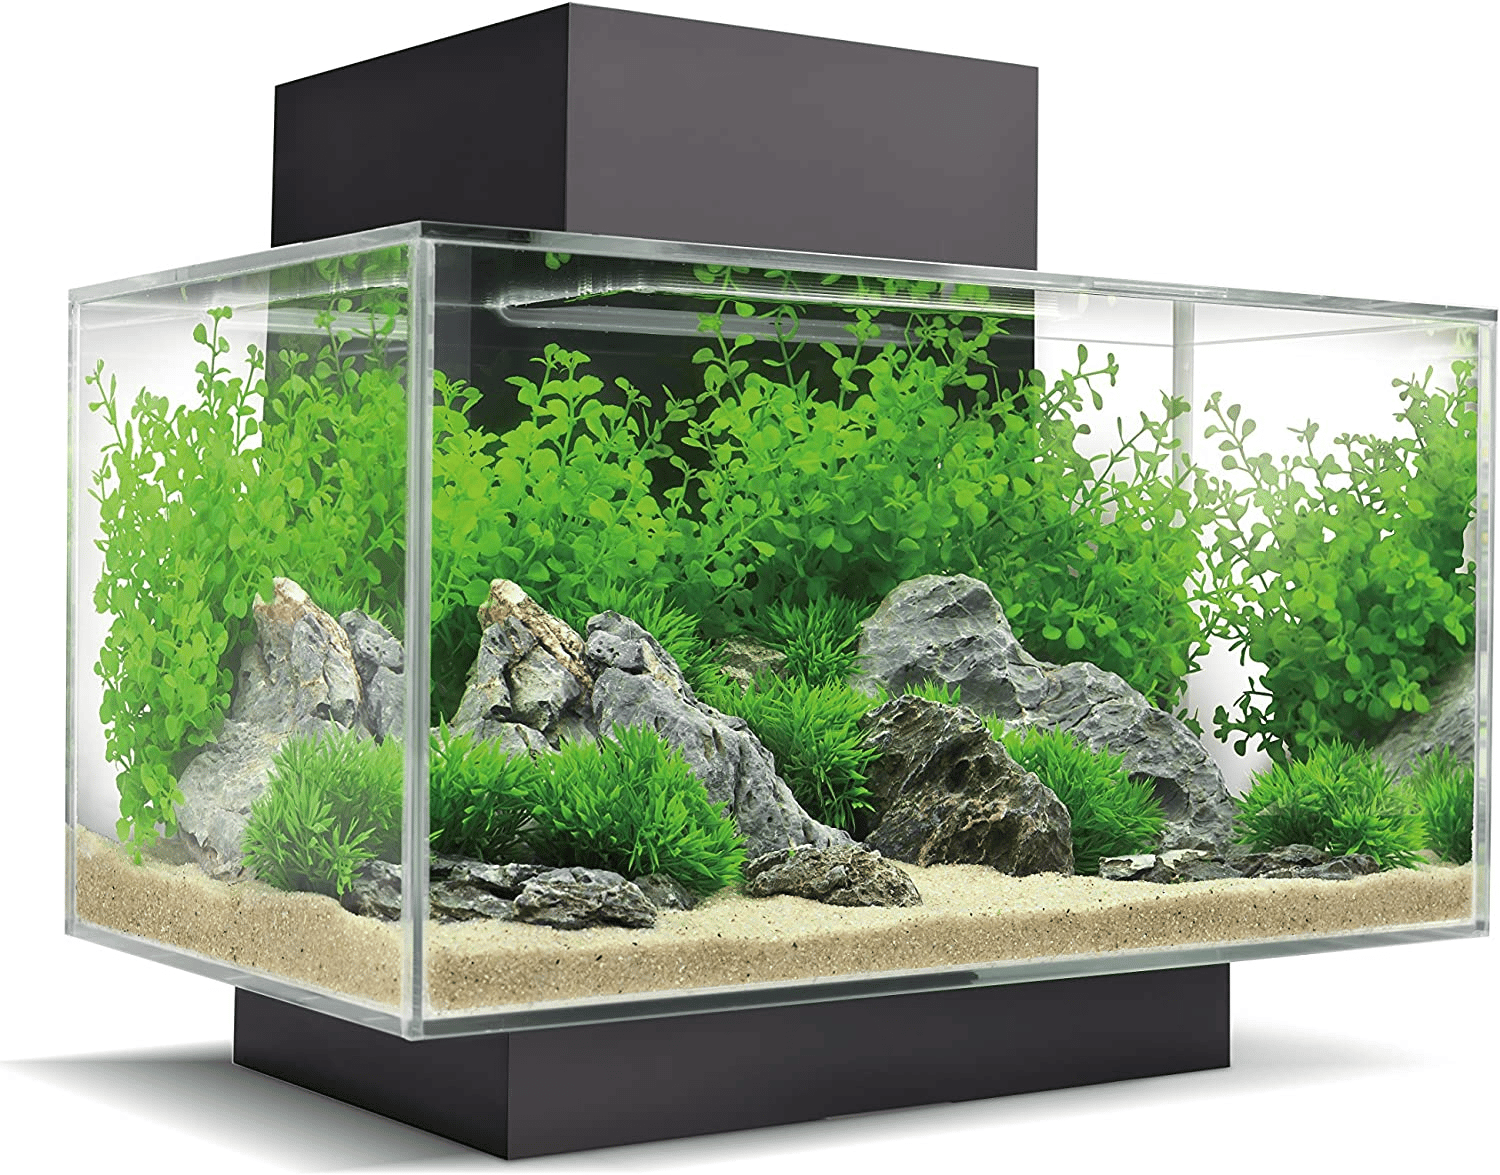 Quel meilleur aquarium pour les petits poissons